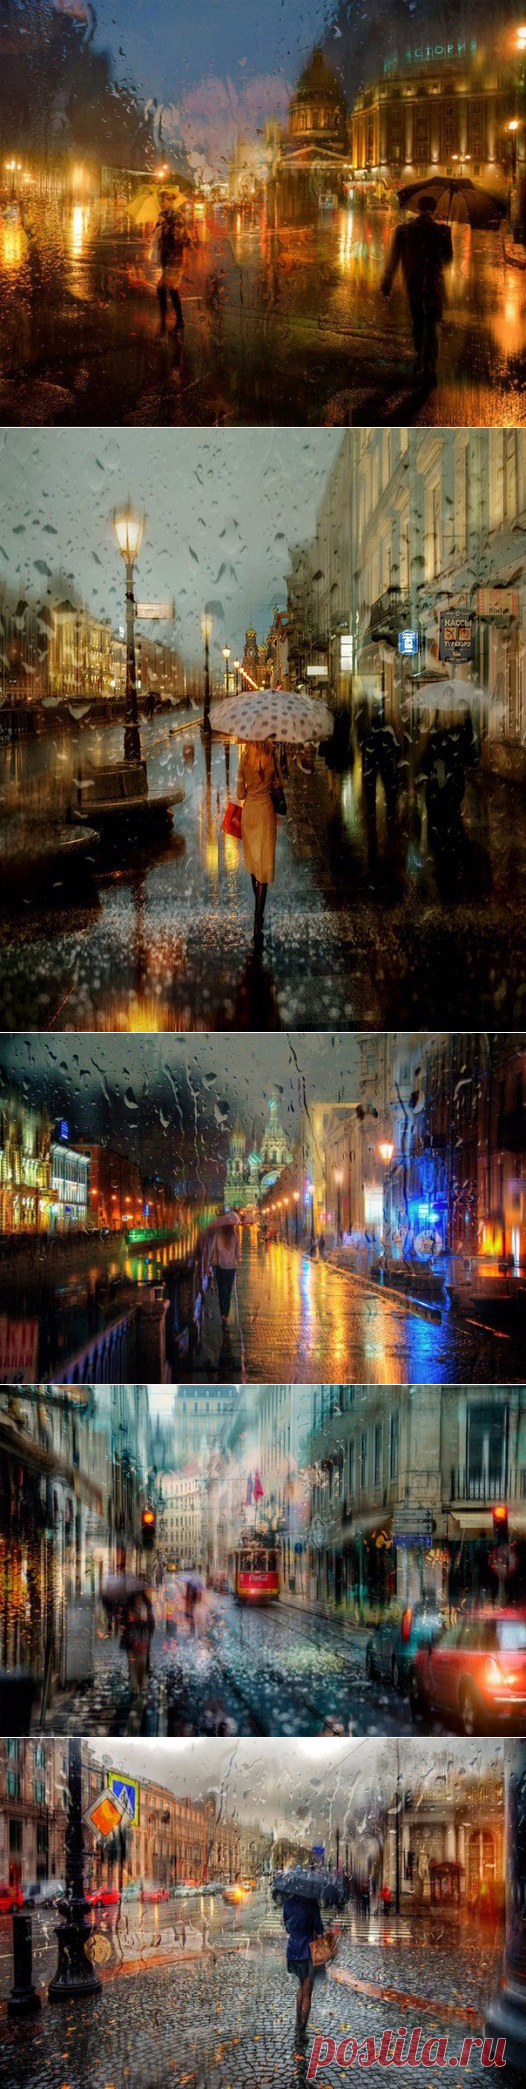 Русский фотограф из Санкт-Петербурга Эдуард Гордеев любит снимать городские пейзажи в дождь. Мягкие капли дождя, размытые цвета, рассеянный свет — все это позволяет ему делать фотографии, больше похожие на работы художников-импрессионистов